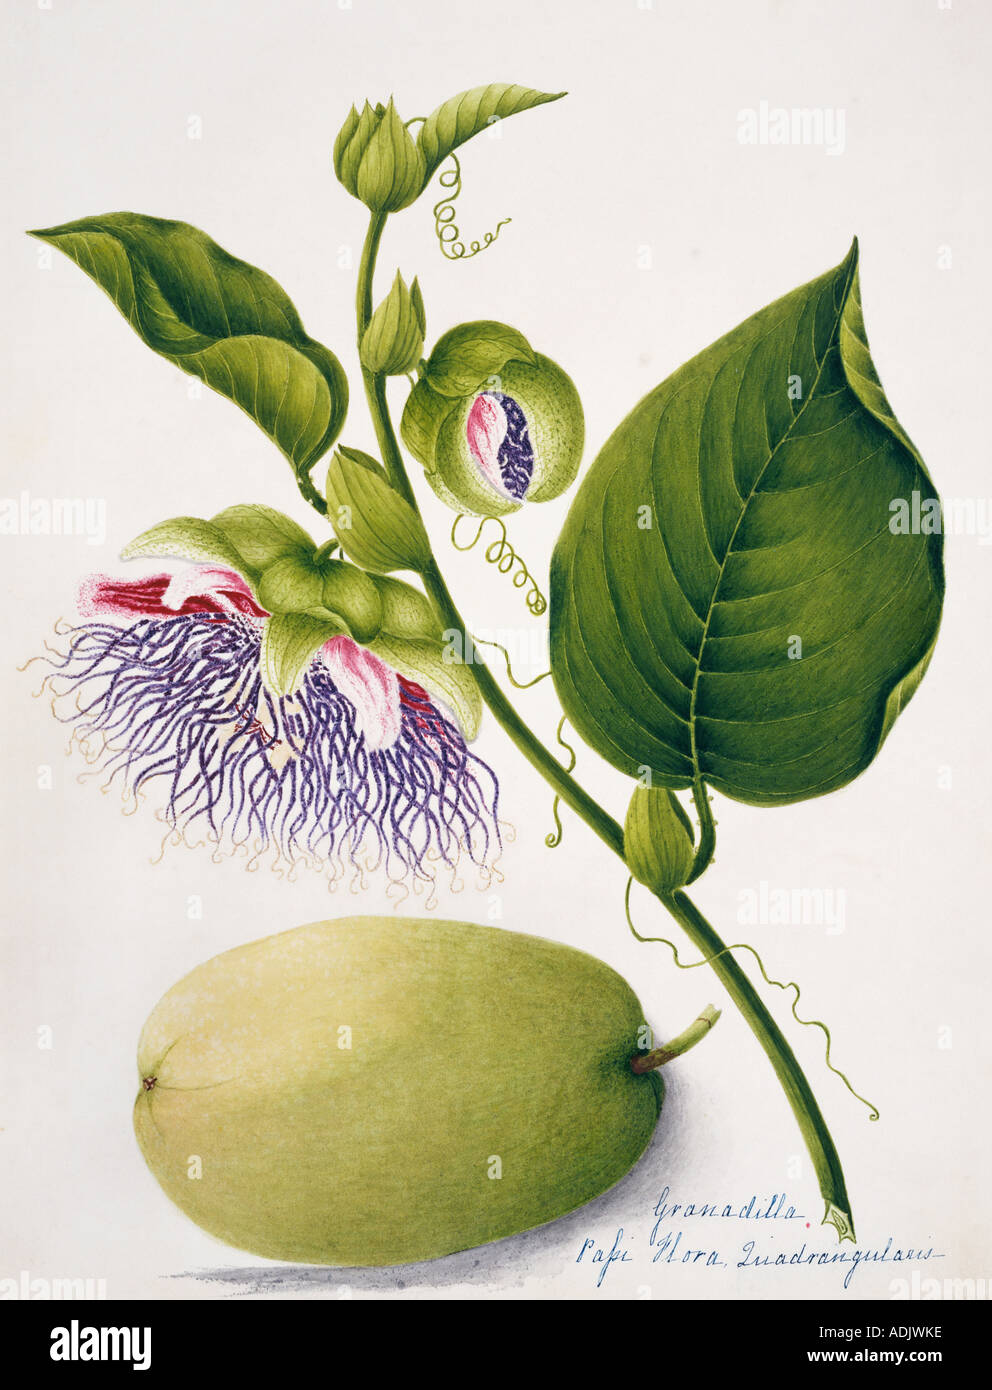 Passiflora quadrangularis granadilla Stock Photo